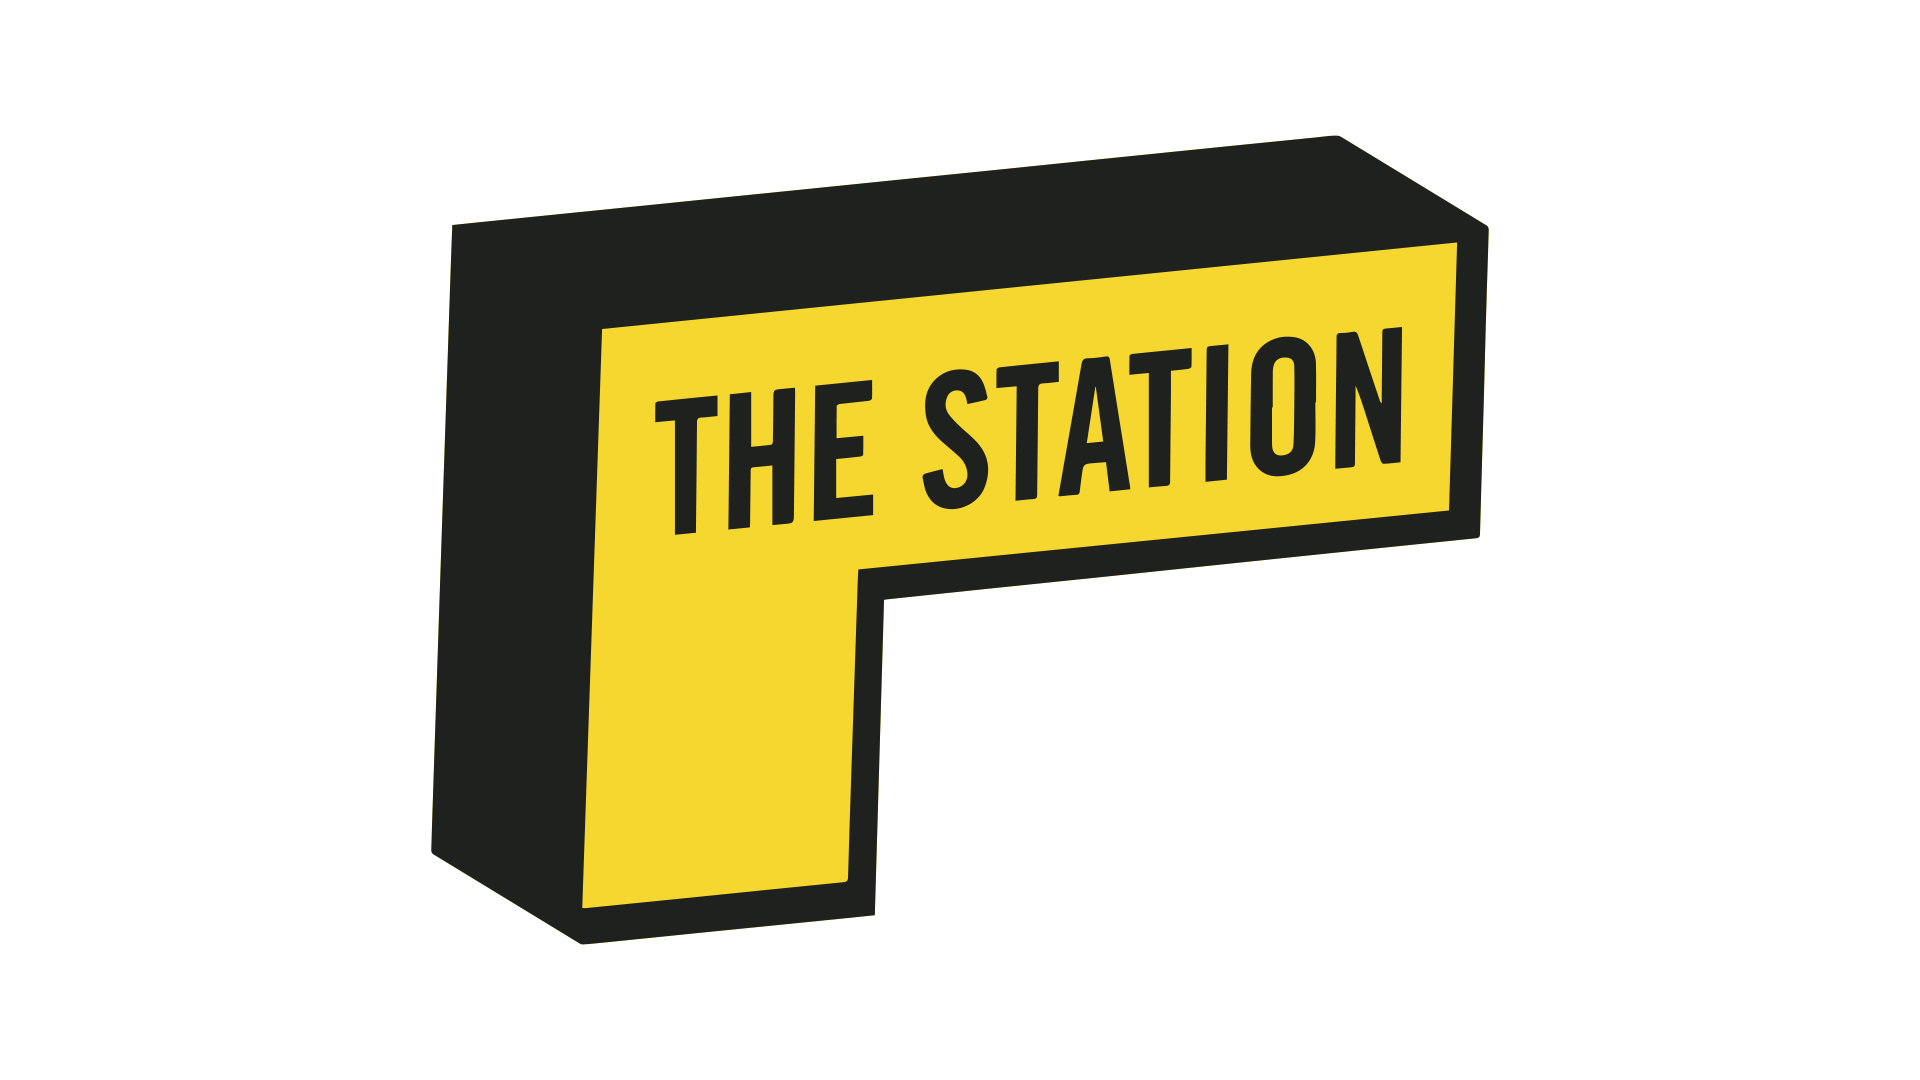 The Station تصميم اعلانات مؤسسة